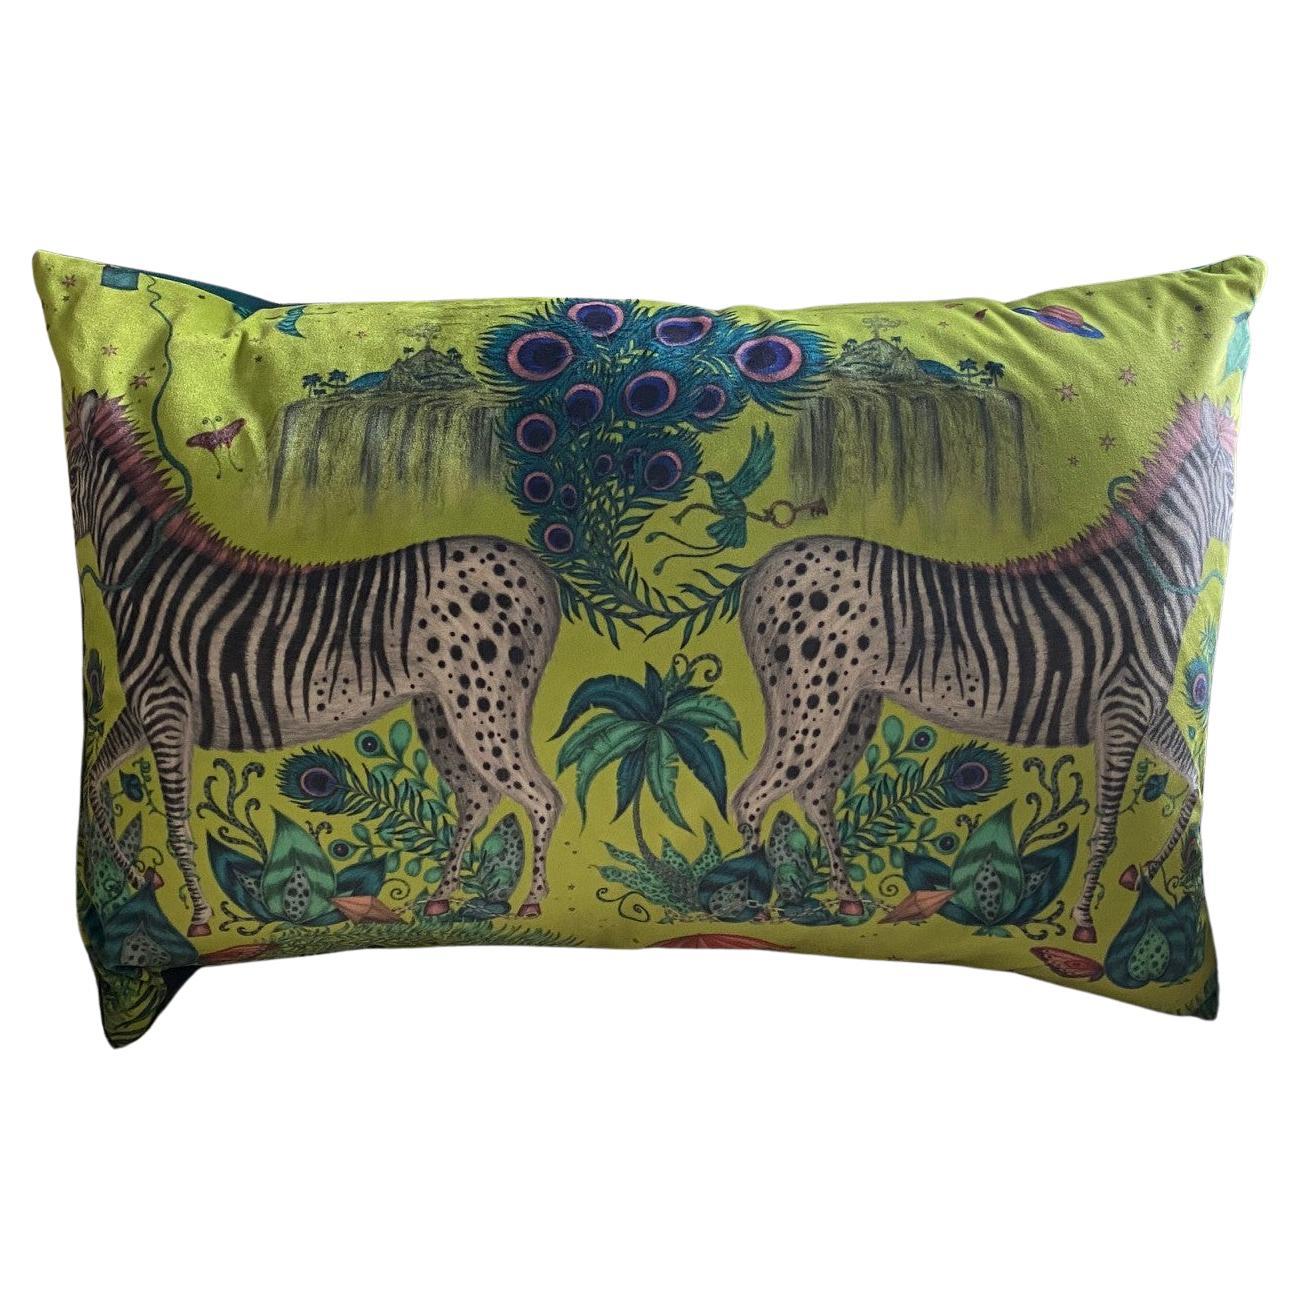 Jungle Scene Velvet Pillow in Clarke & Clarke Fabric with Contrasting Back